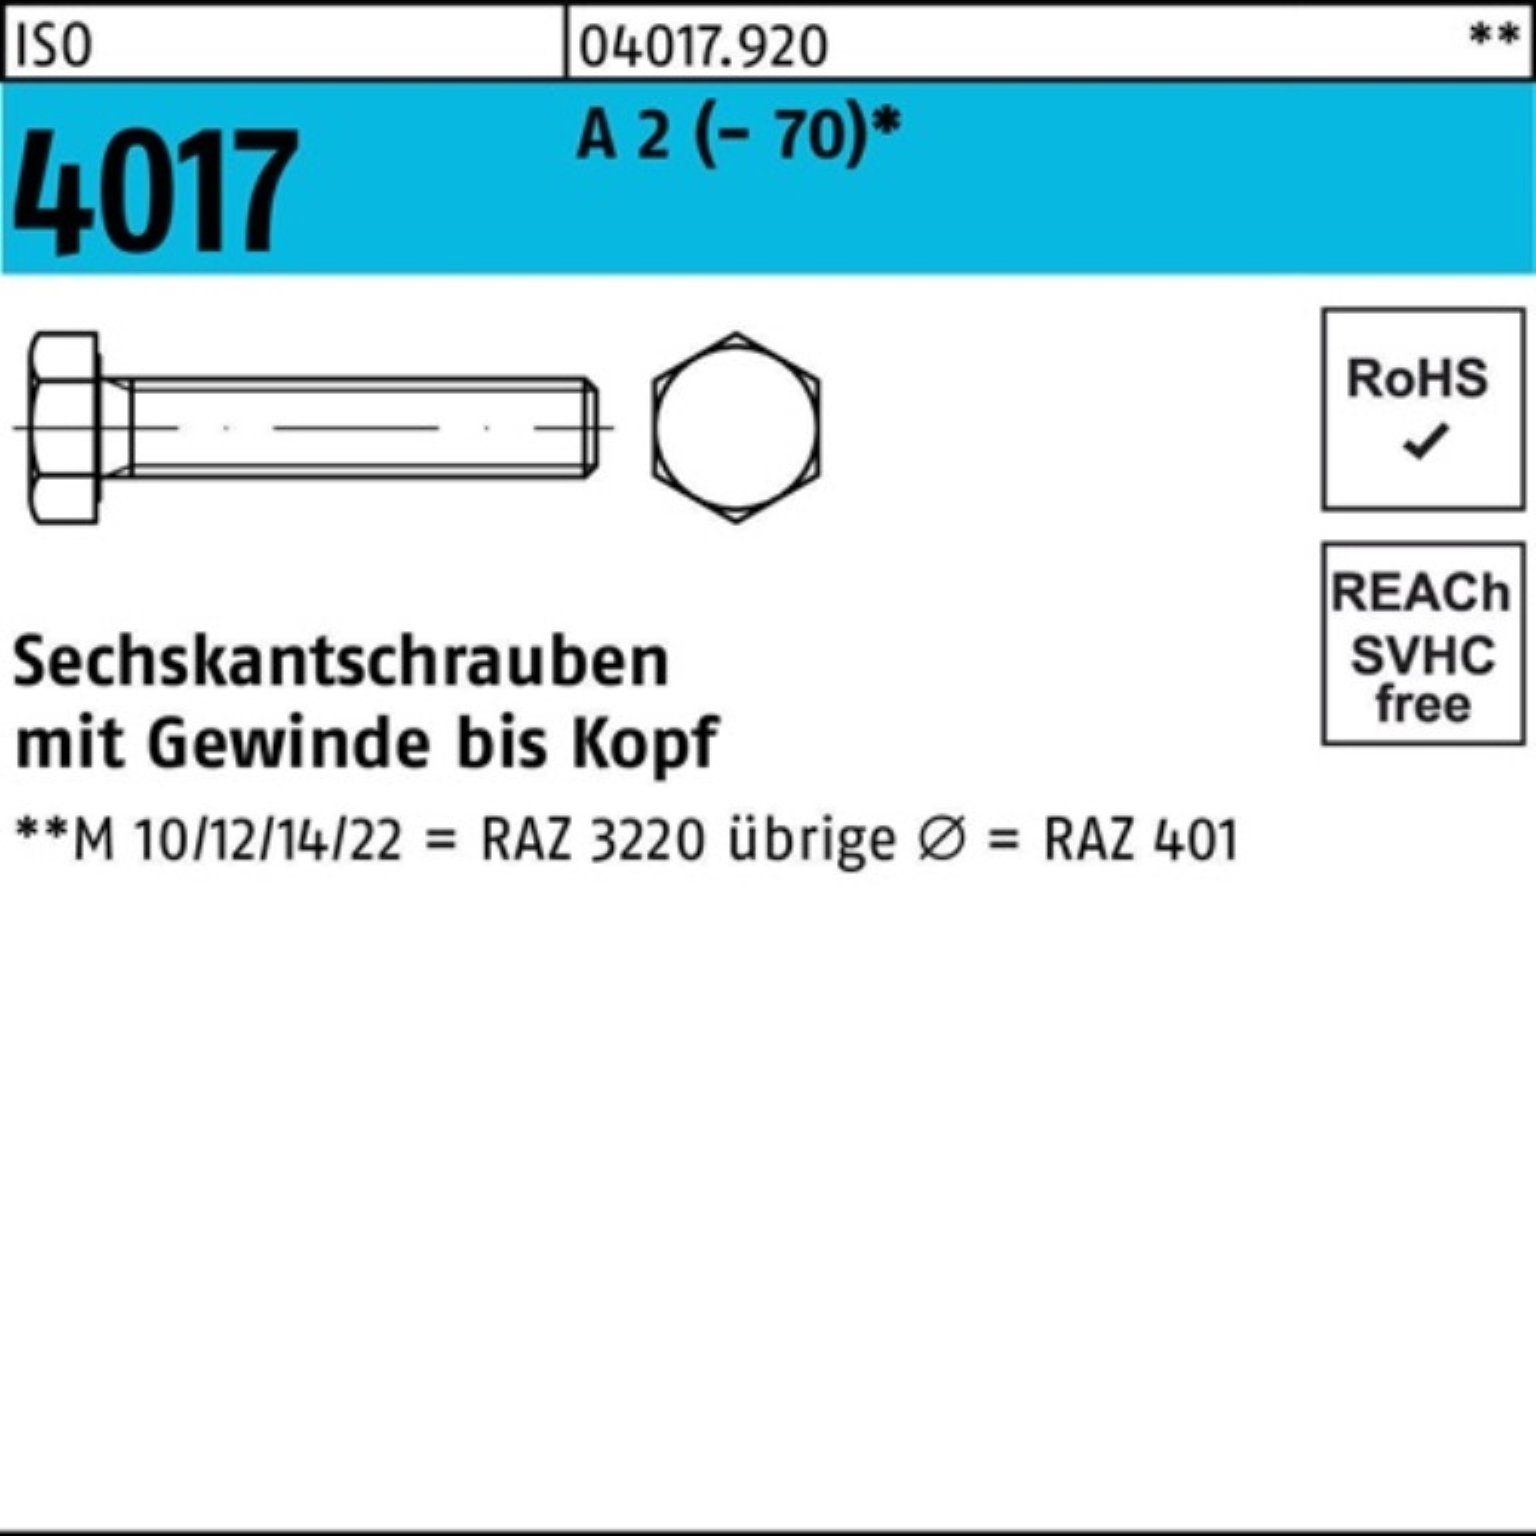 Bufab Sechskantschraube 500er Pack Sechskantschraube ISO 4017 VG M5x 12 A 2 (70) 500 Stück